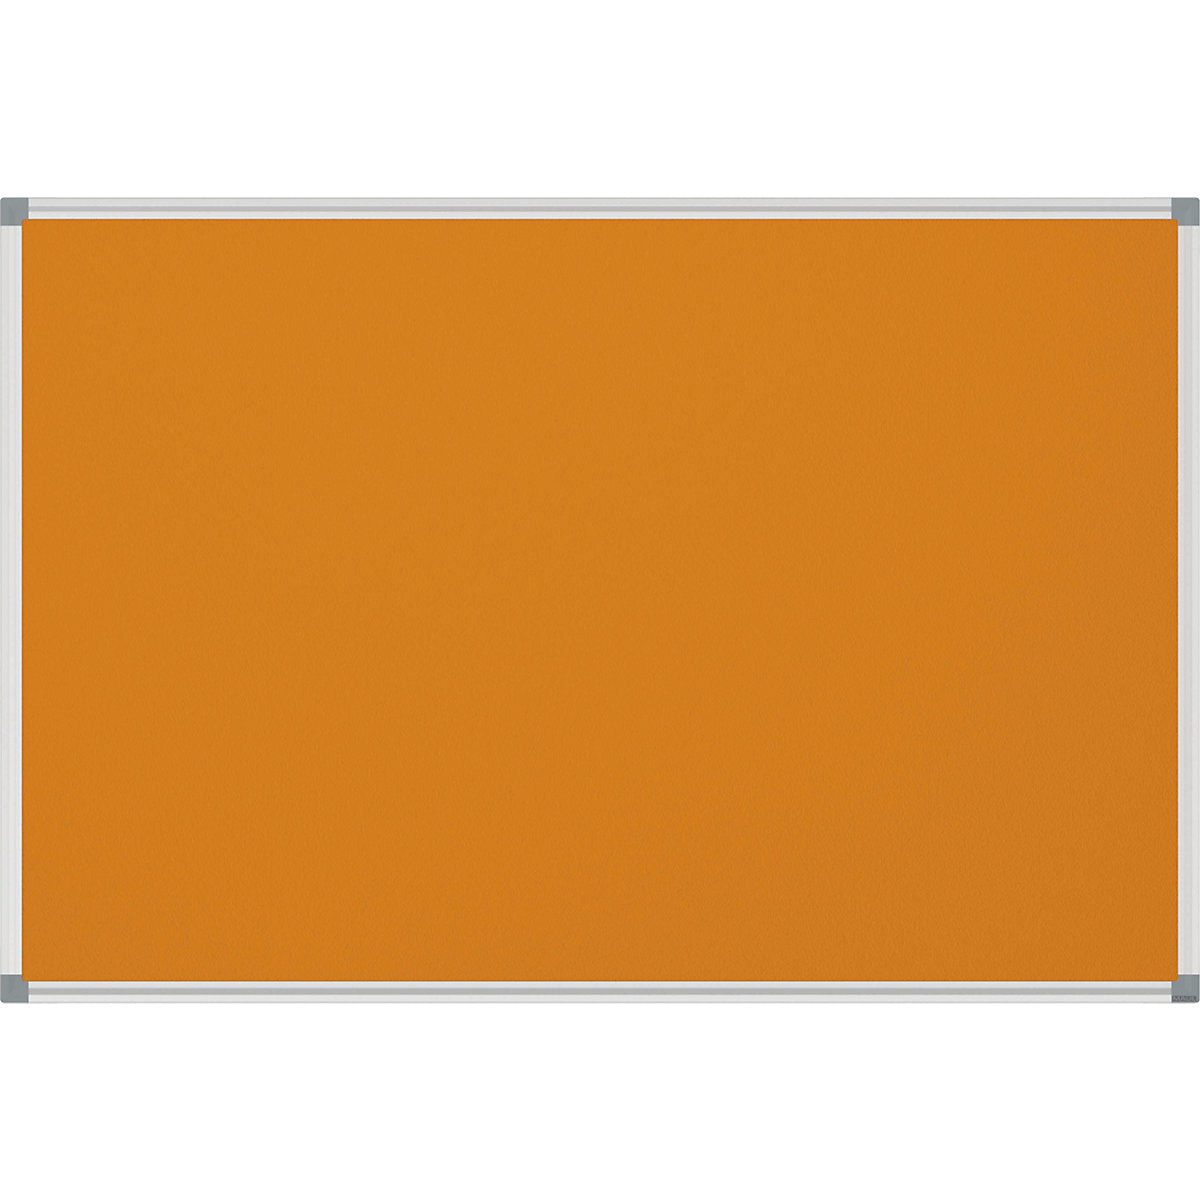 Nástěnka STANDARD – MAUL, plstěný potah, oranžová, š x v 900 x 600 mm